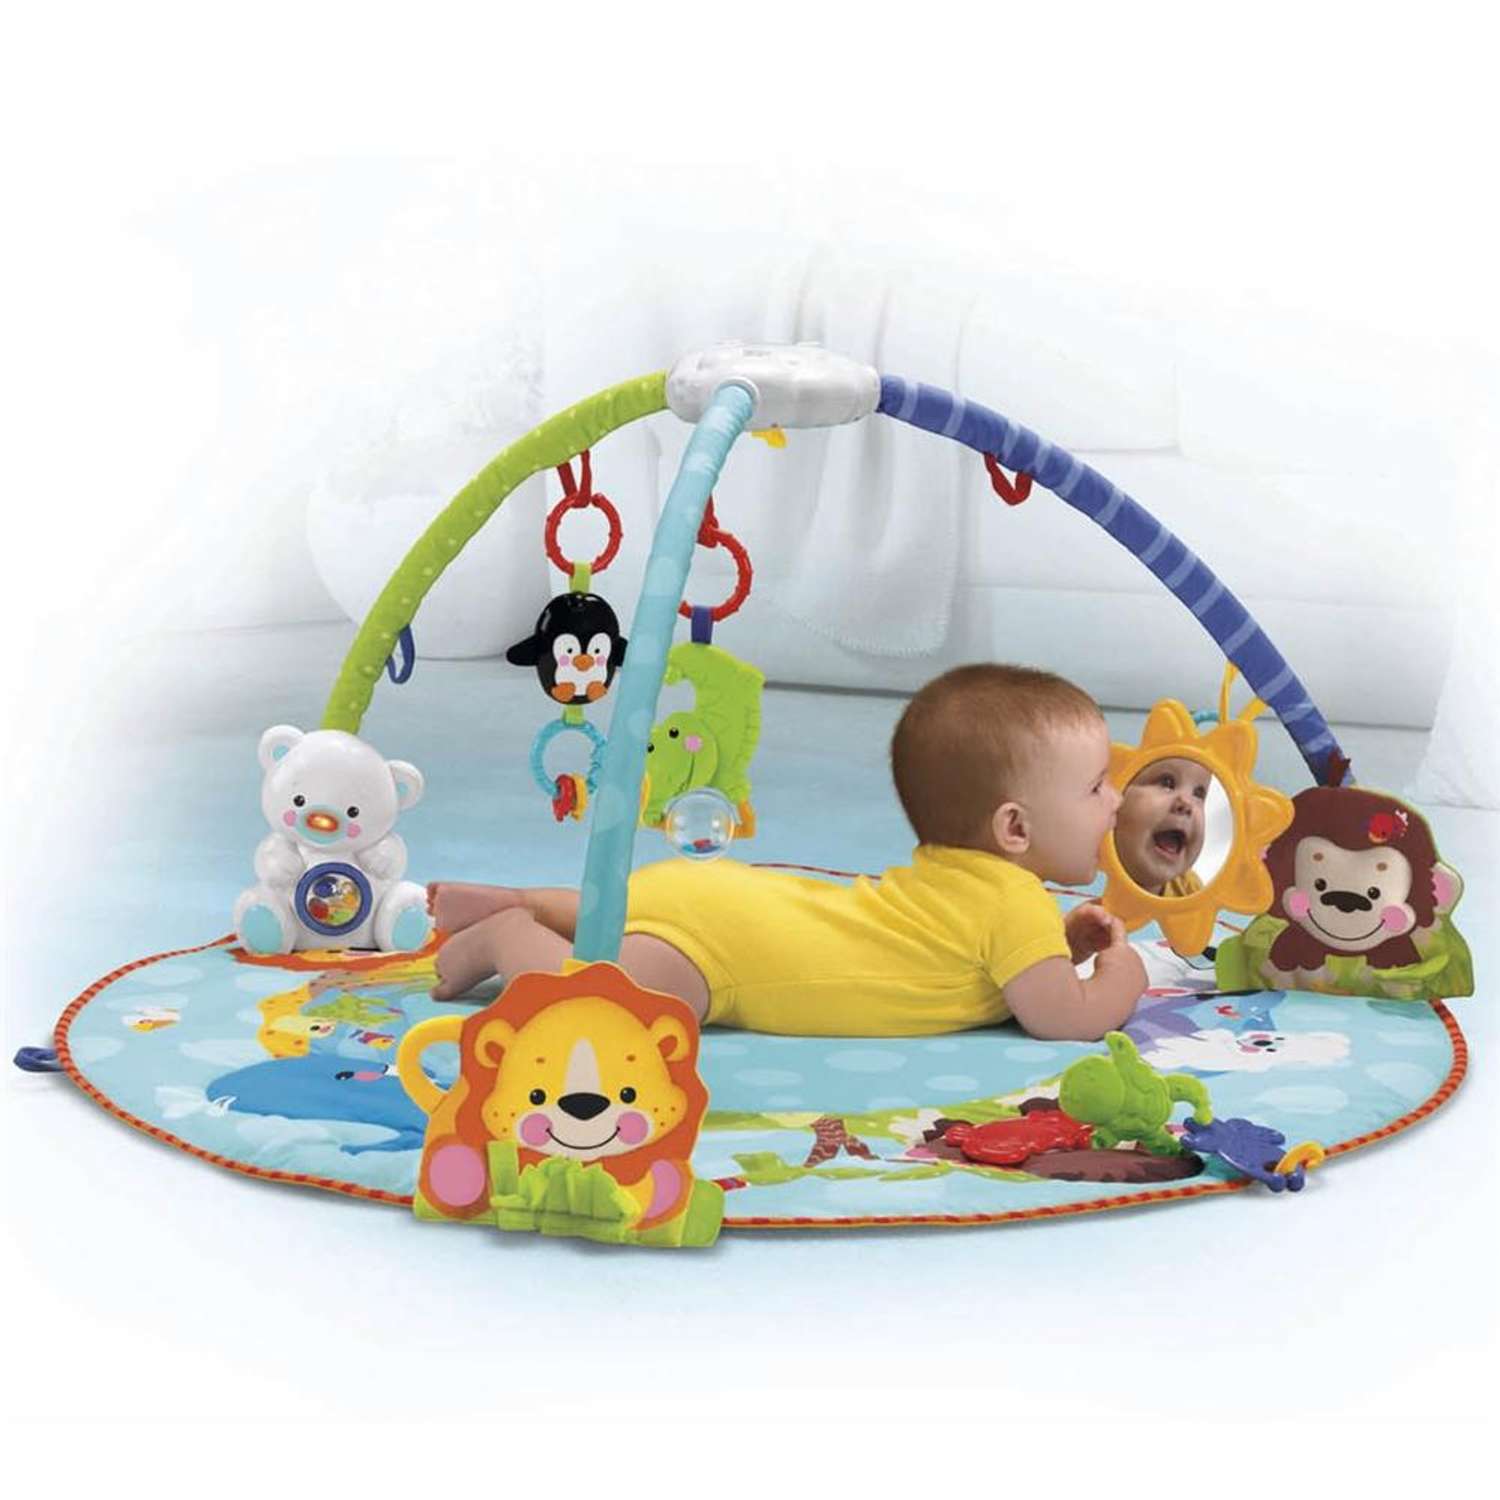 Музыкальный коврик BabyGo с игрушками-подвесками - фото 2